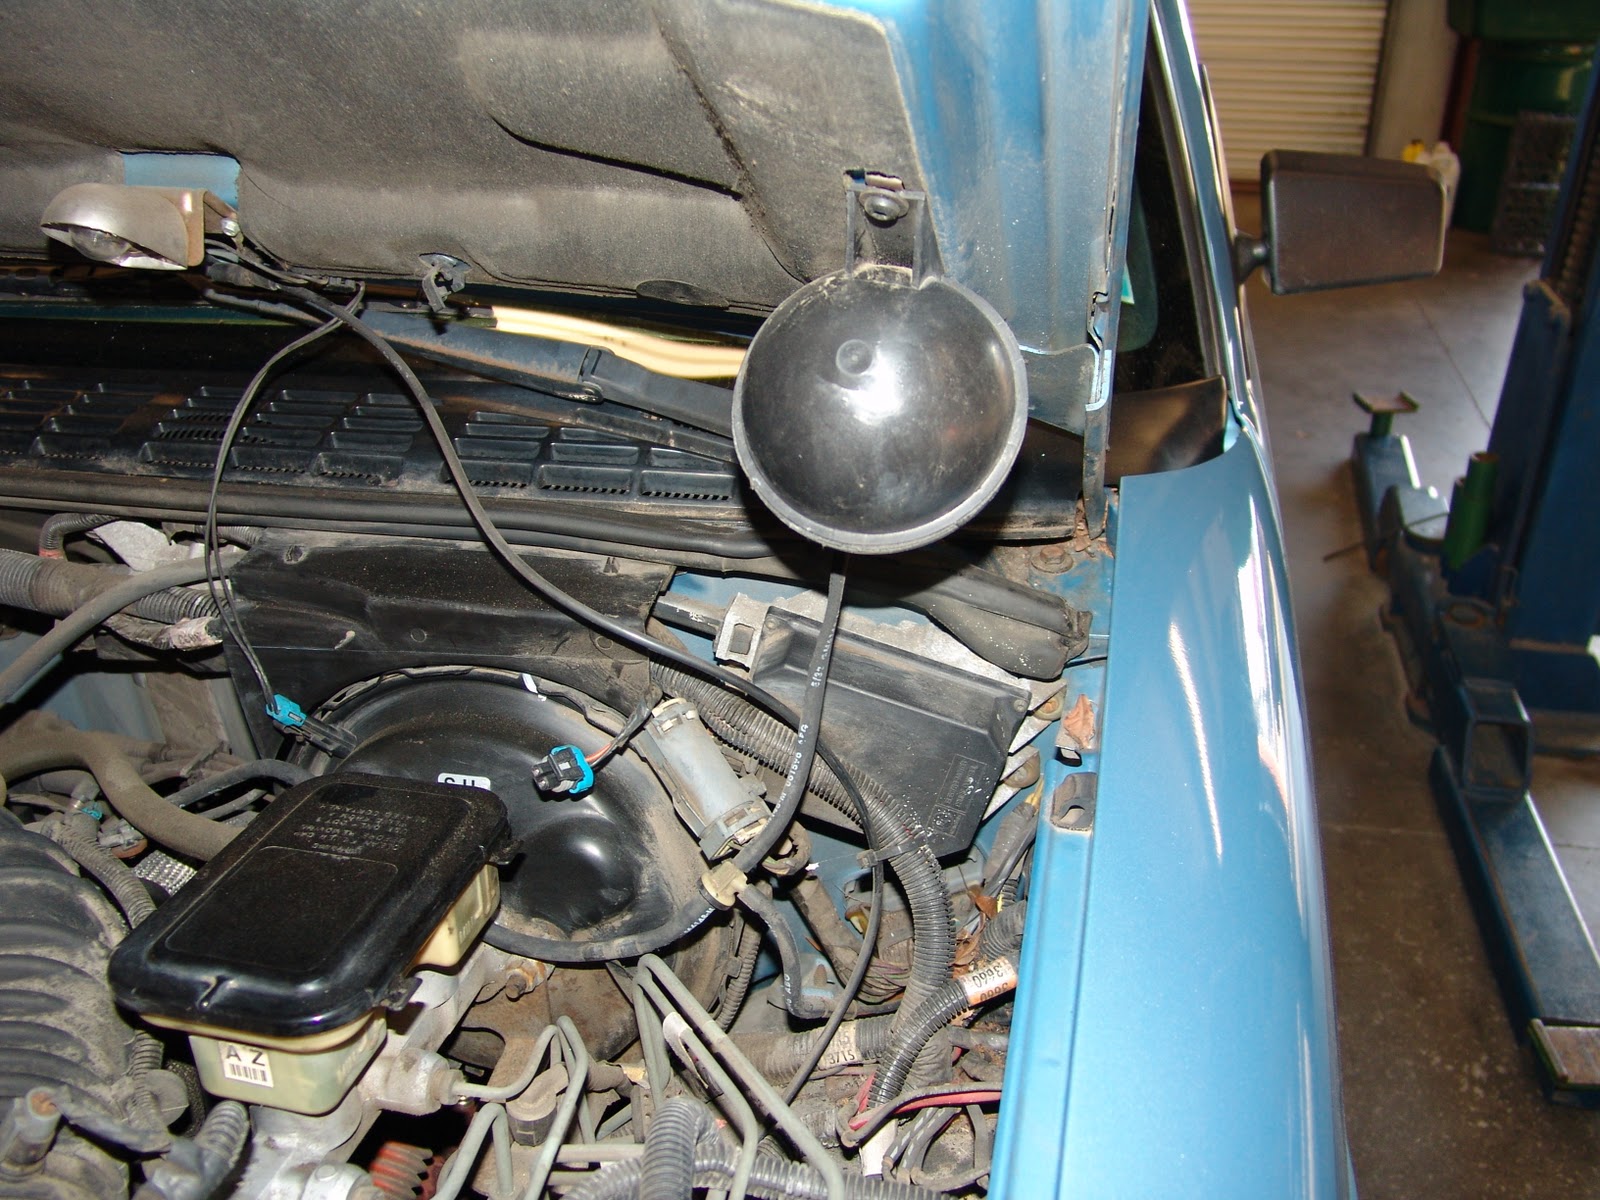 97 Blazer 4x4 help needed with pic - Blazer Forum - Chevy ... 1972 corvette starter wiring diagram 